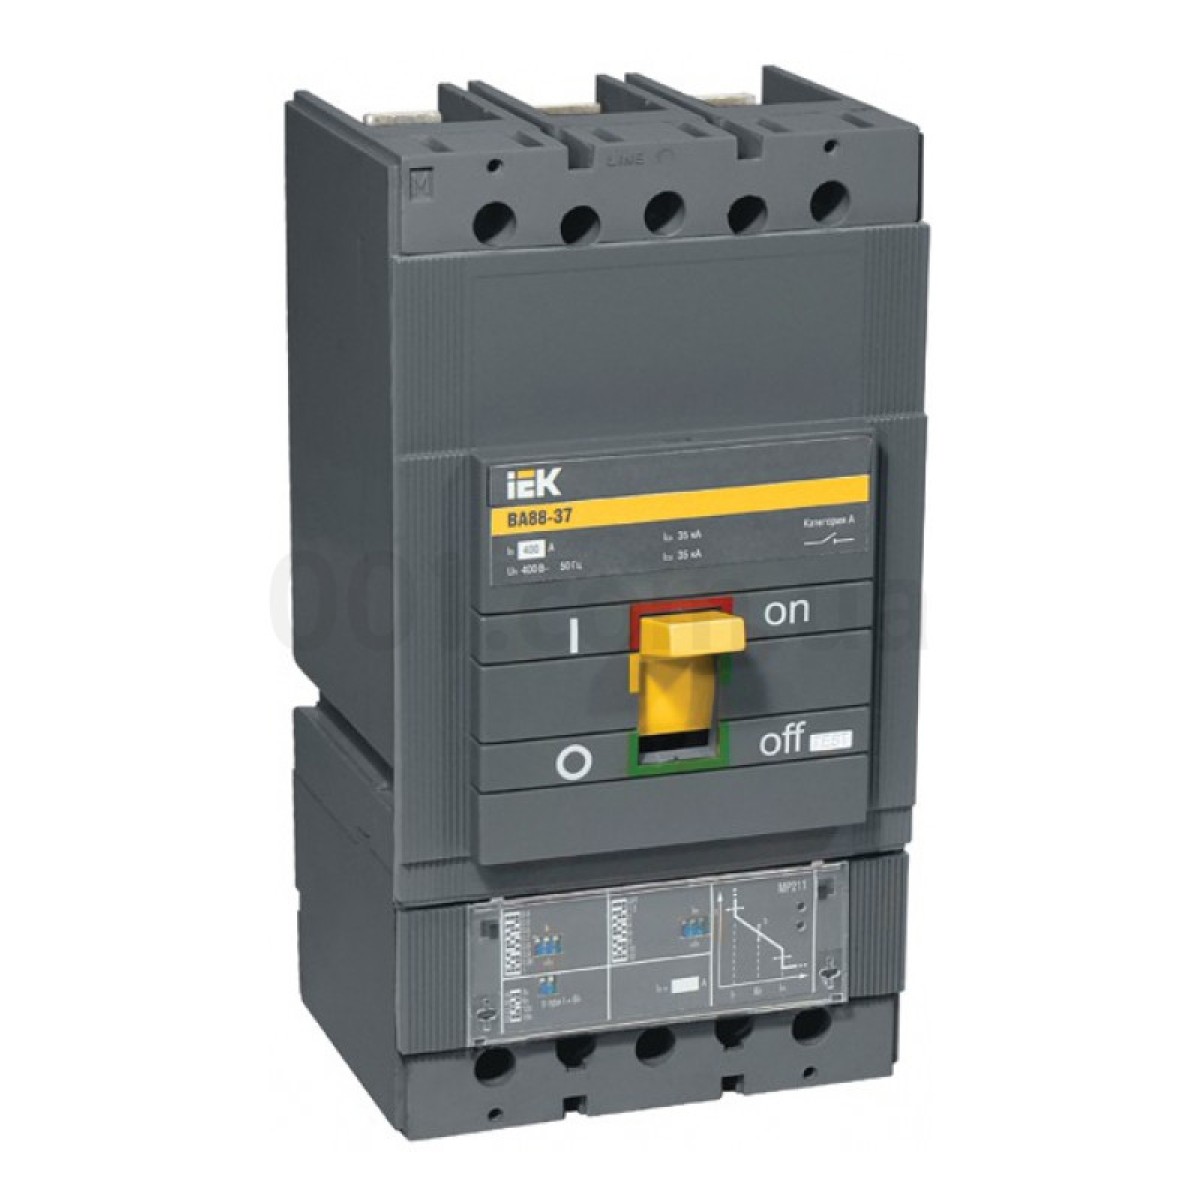 Автоматический выключатель ВА88-37 3P 400А 35кА с электронным расцепителем MP211, IEK 98_98.jpg - фото 1